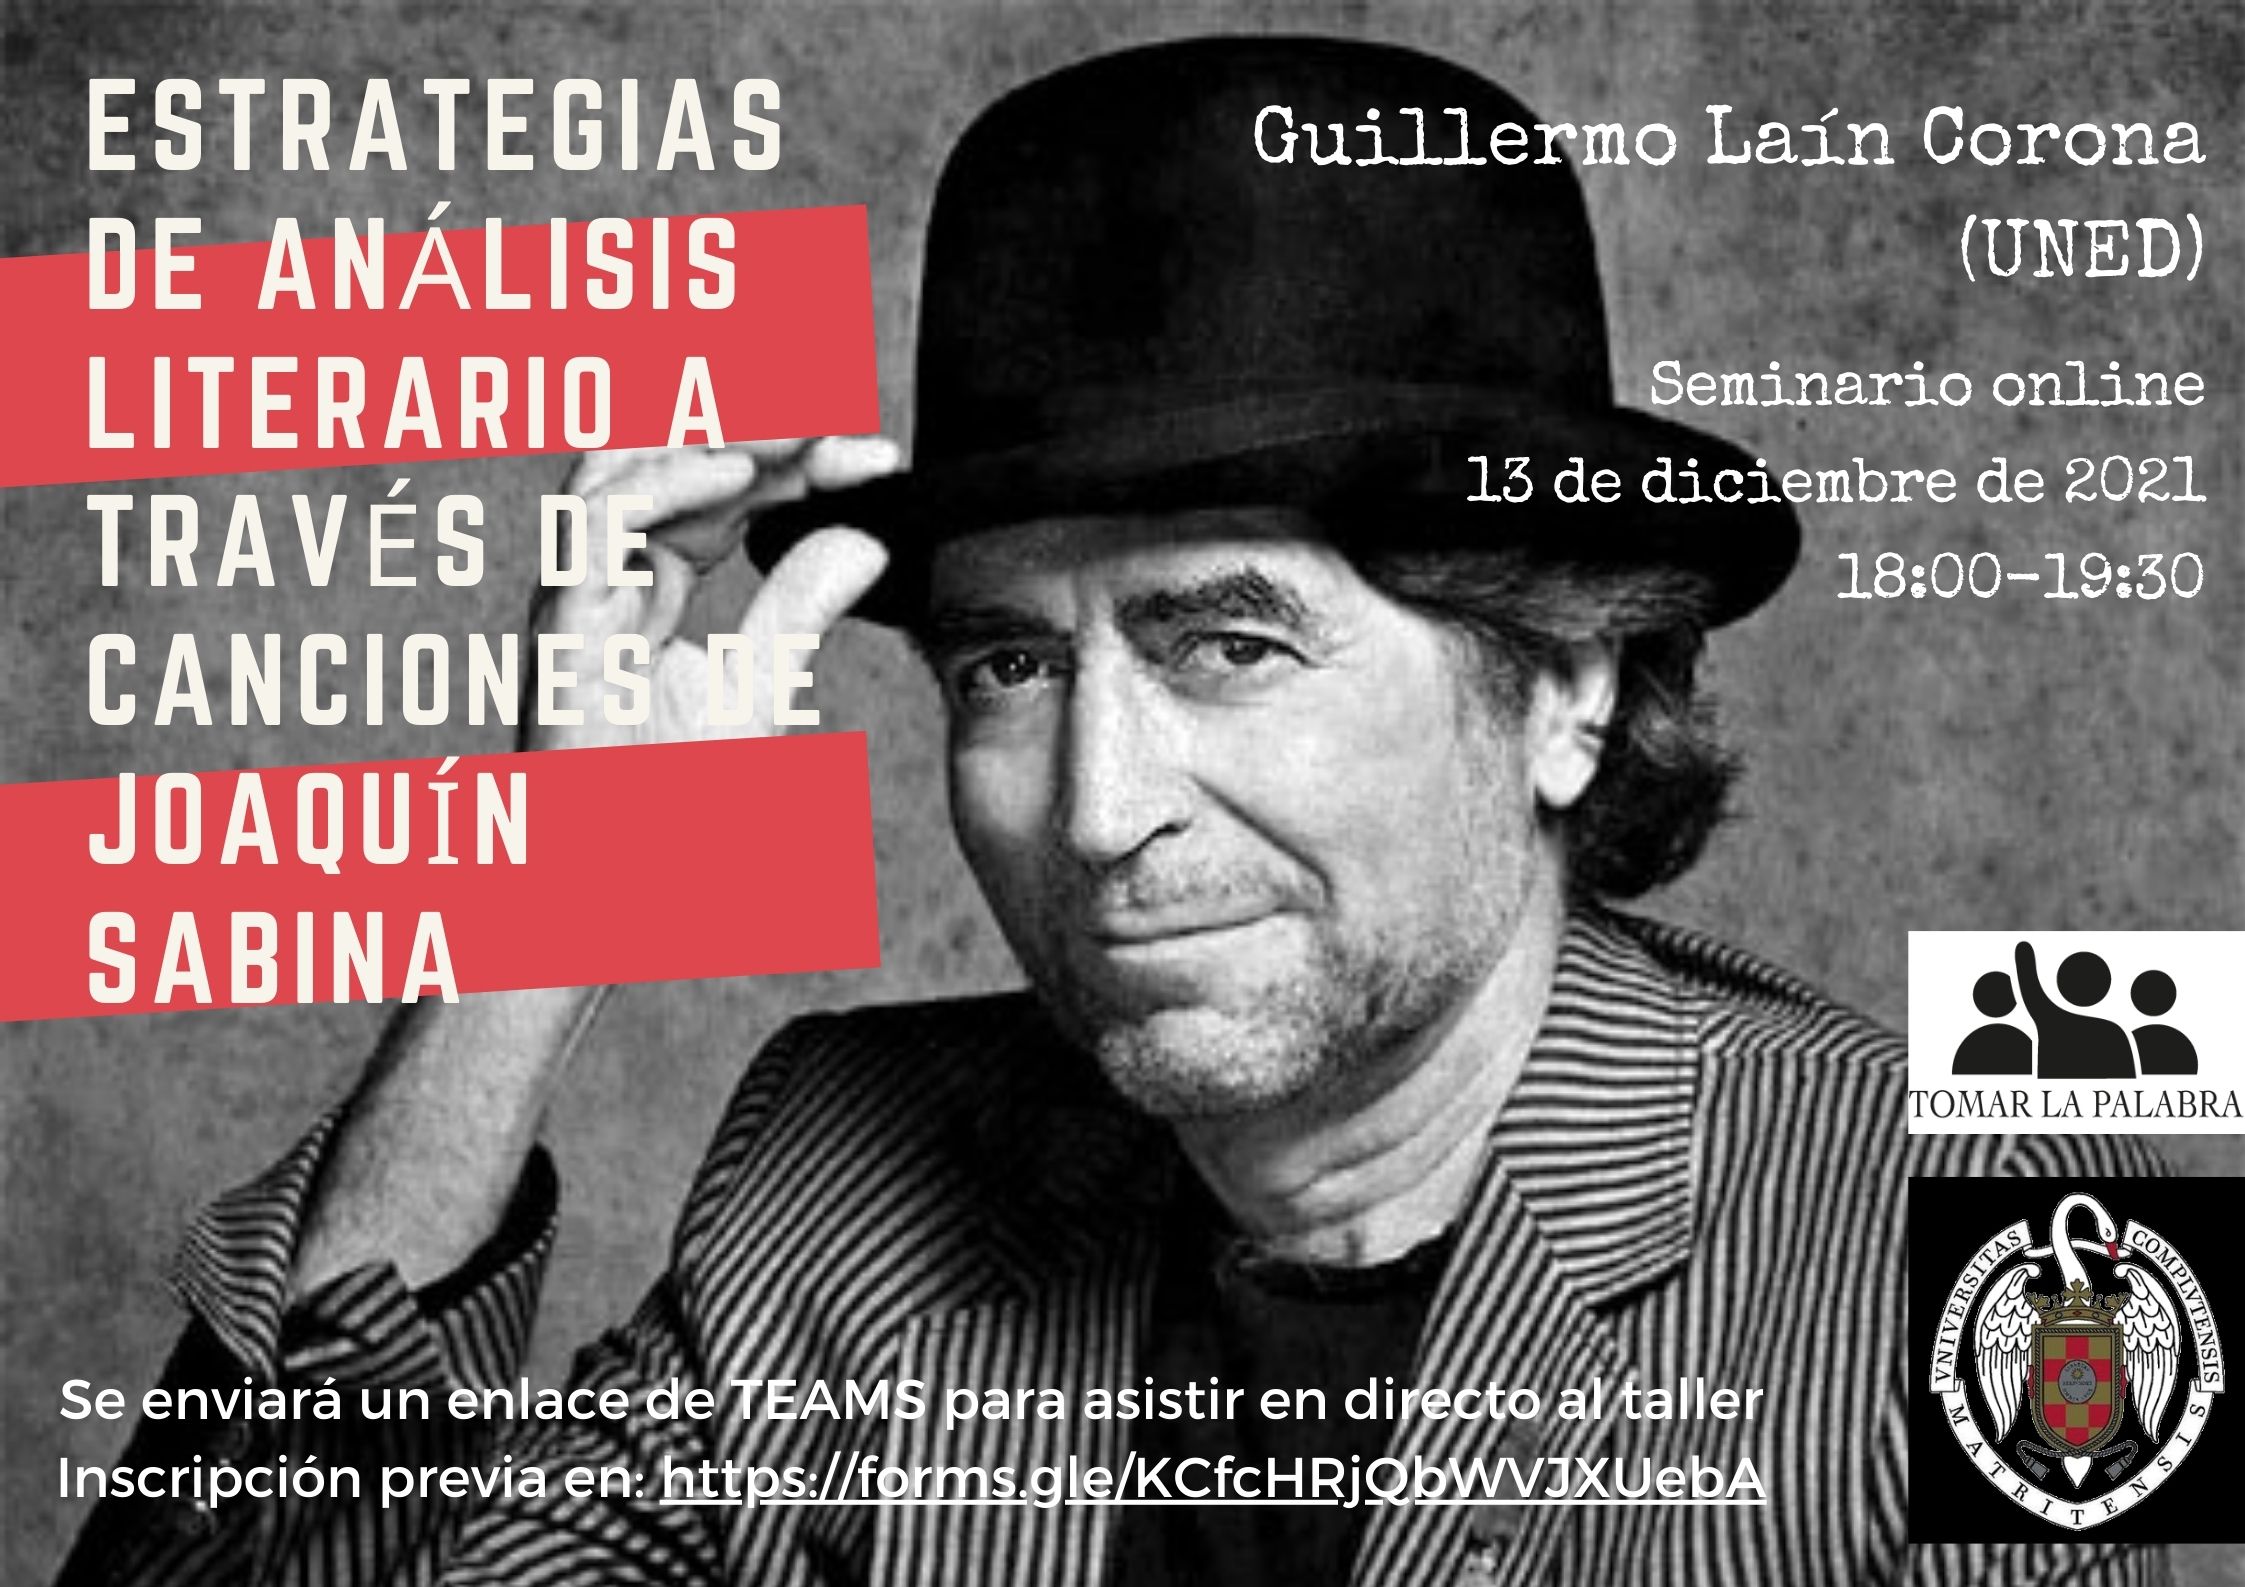 Guillermo Laín Corona, "Estrategias de análisis literario a través de canciones de Joaquín Sabina"